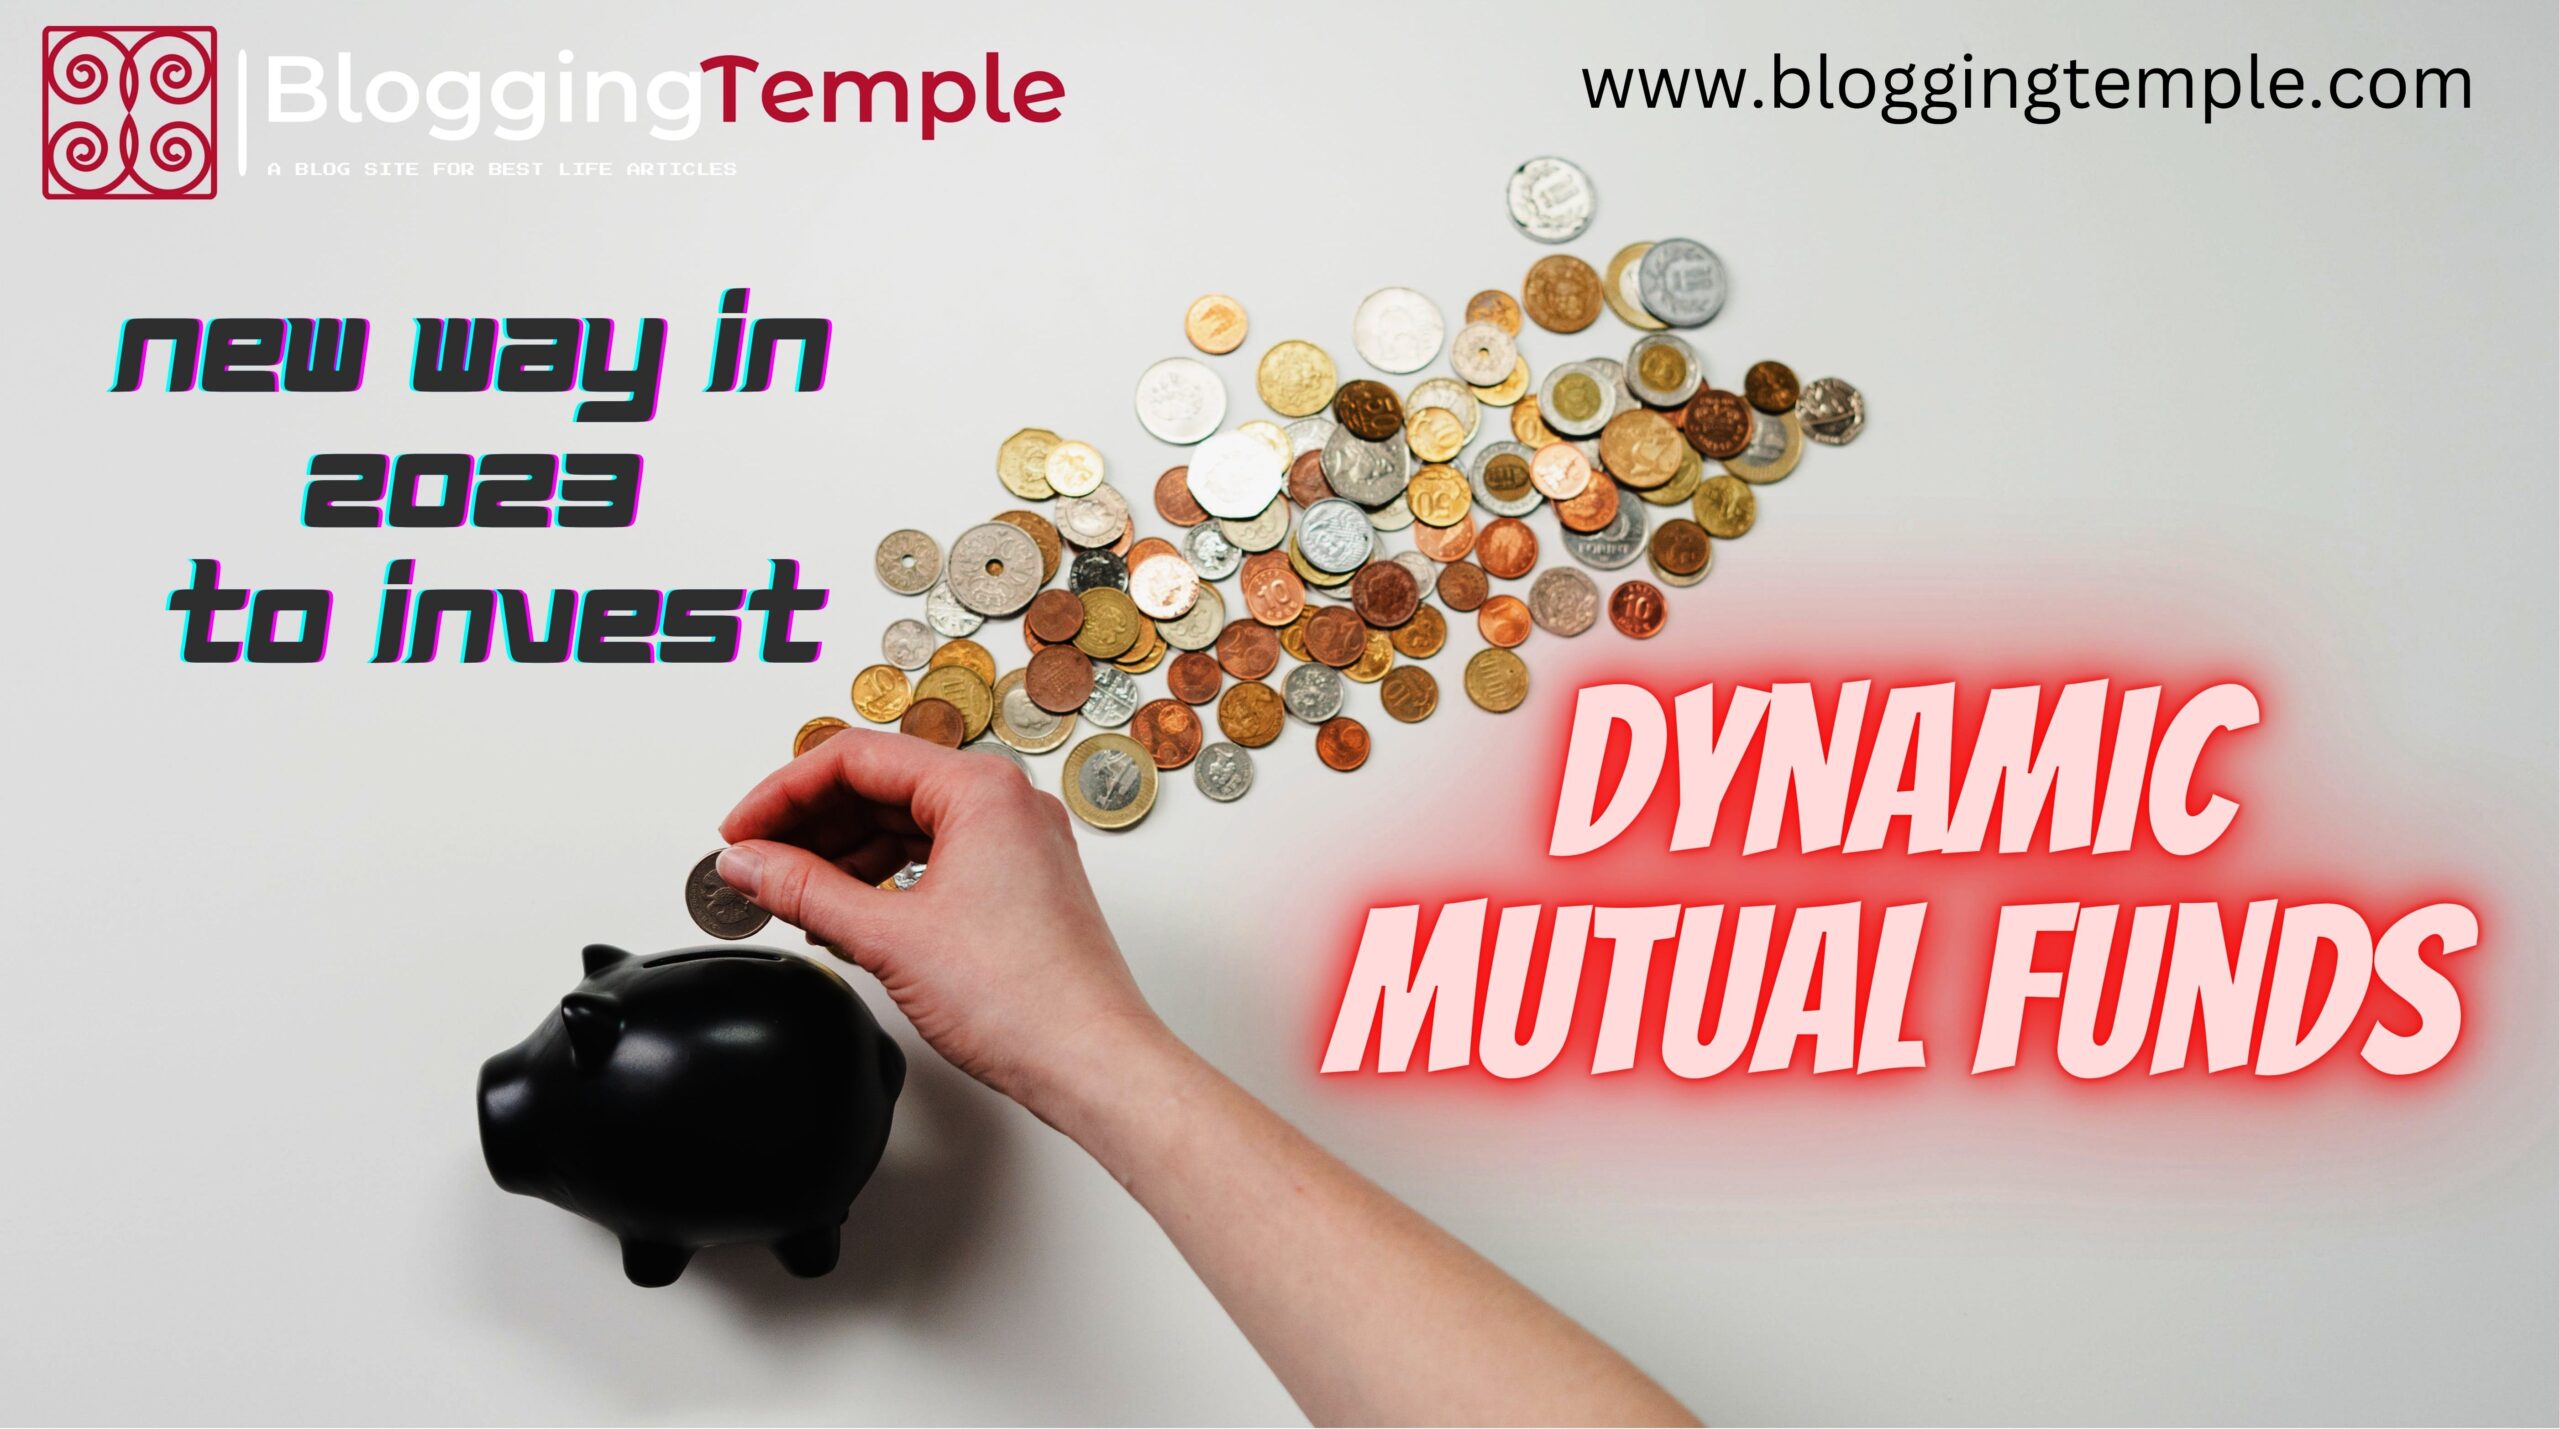 Dynanic Mutual Funds